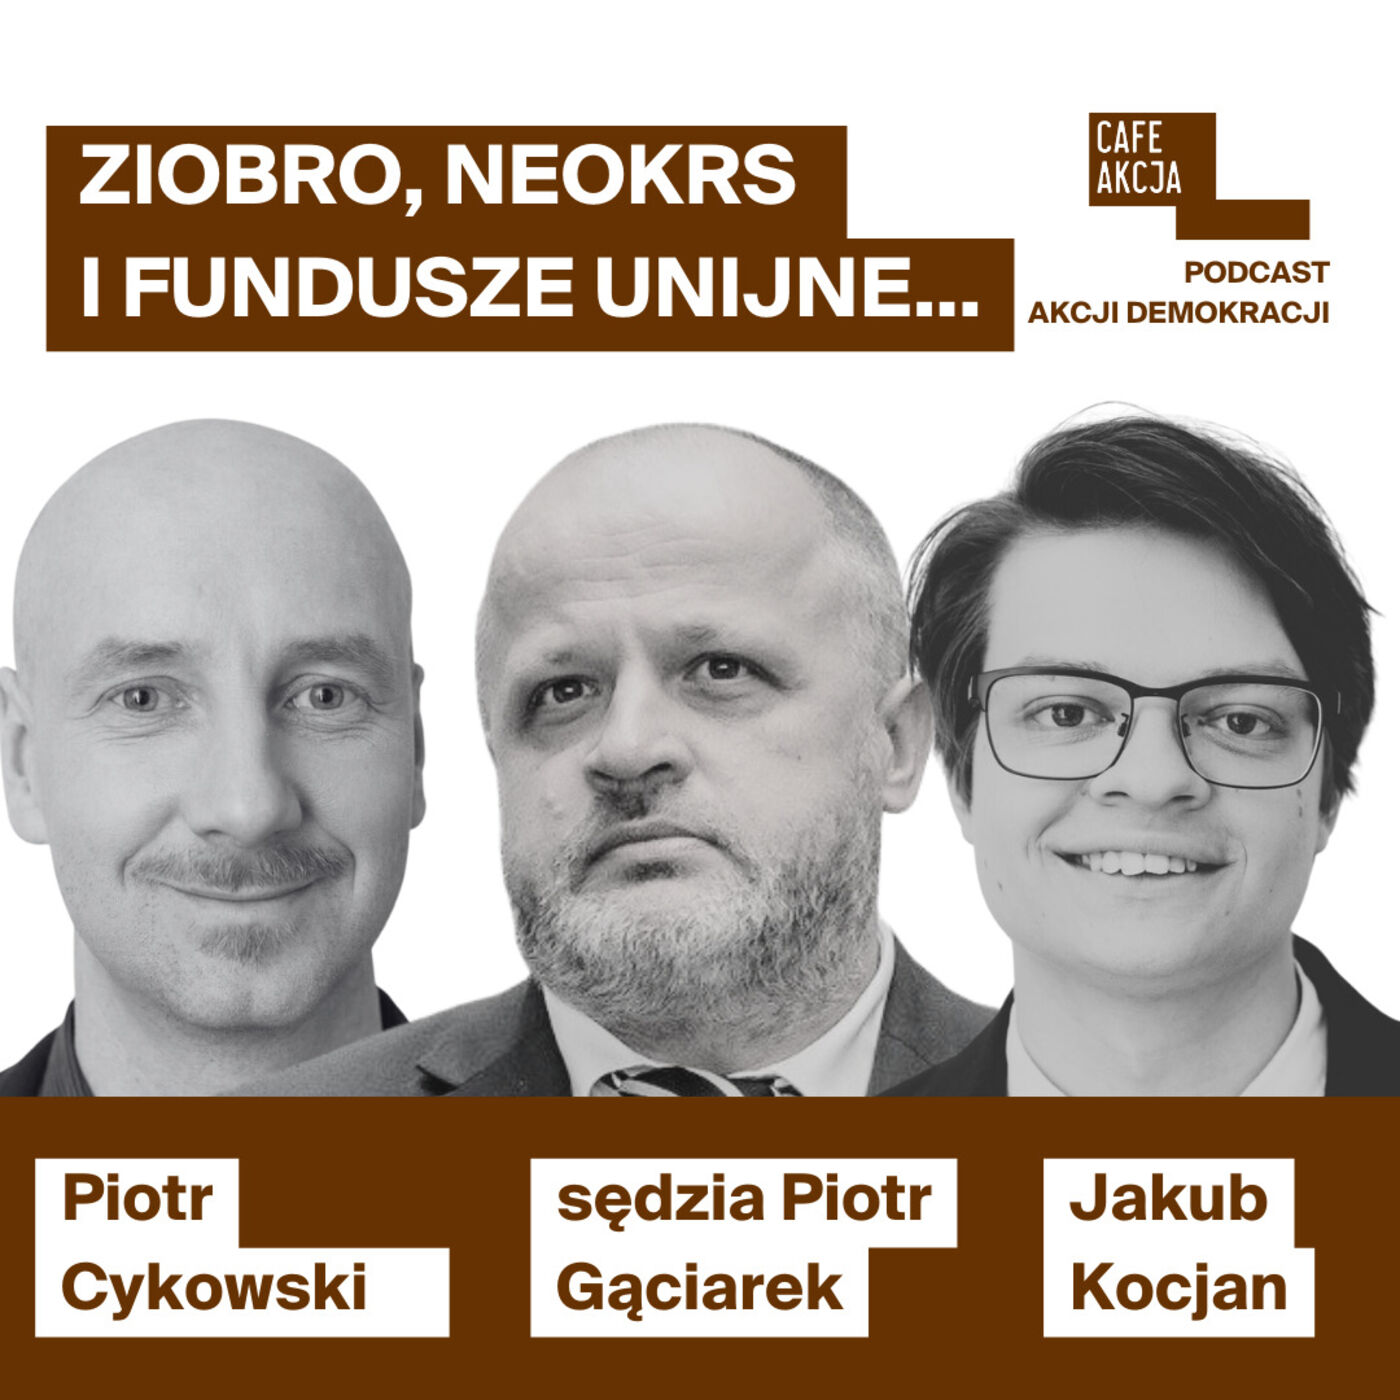 Ziobro, neoKRS i fundusze unijne - co się dzieje w praworządności? Sędzia Piotr Gąciarek i Jakub Kocjan.